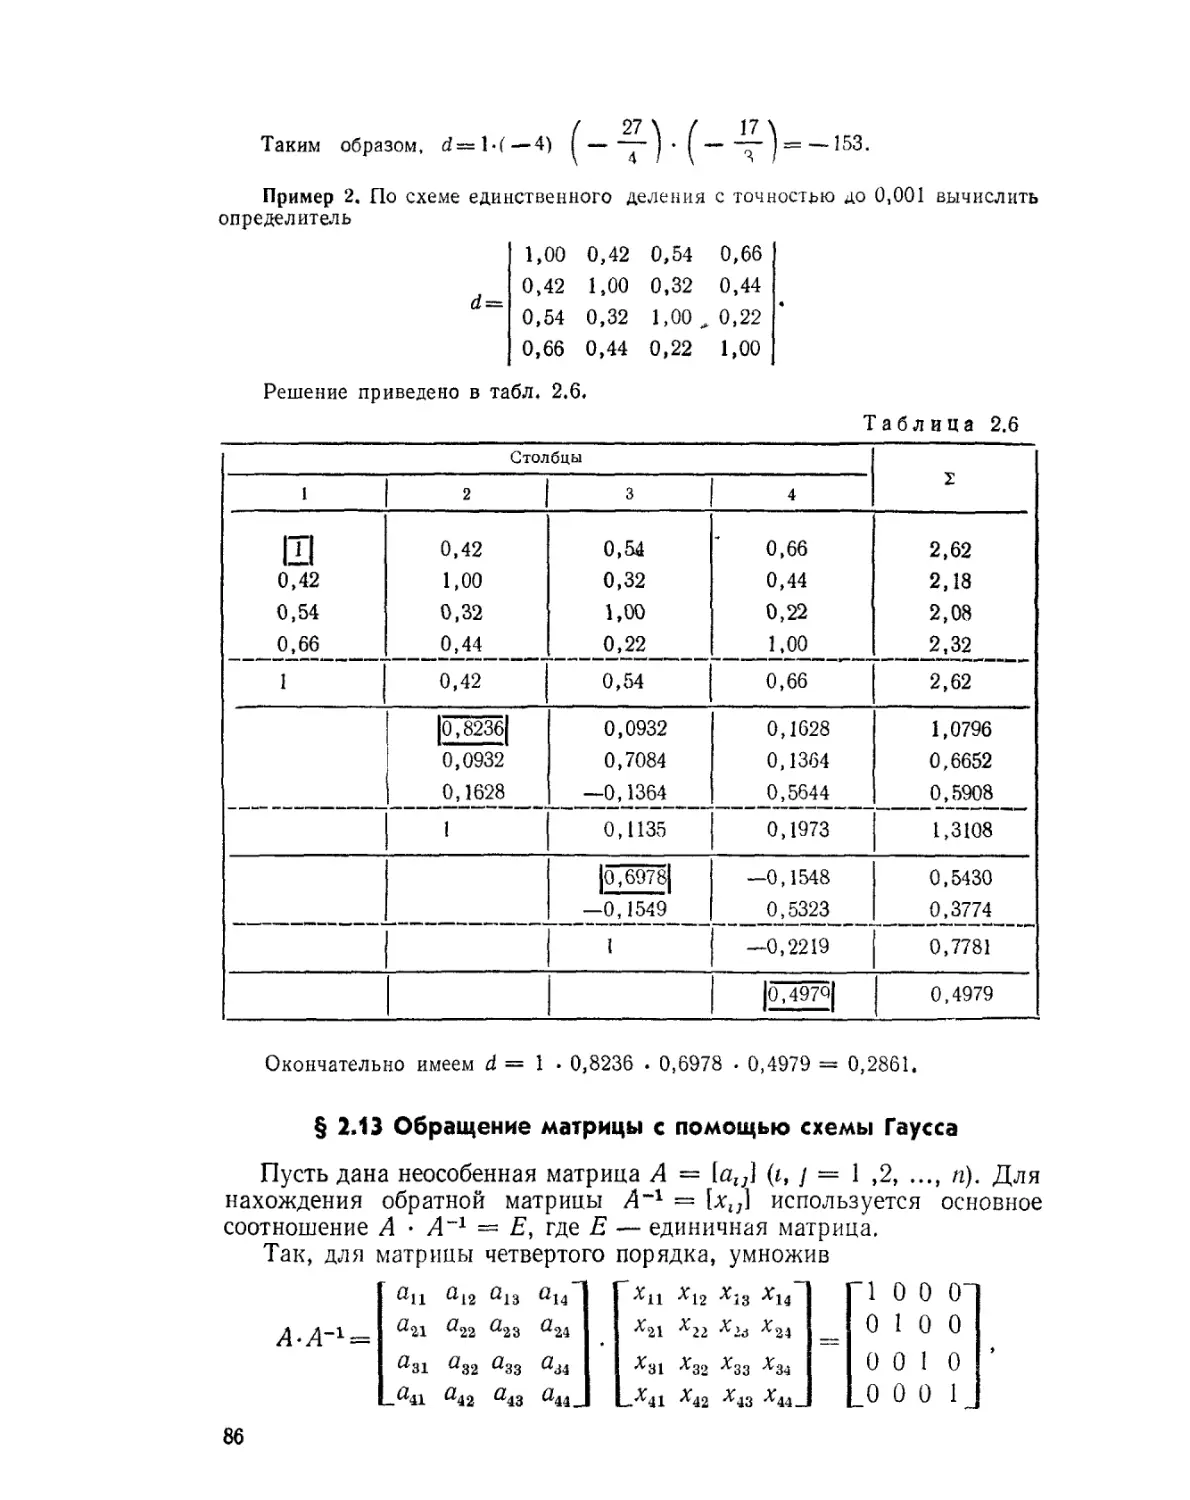 § 2.13. Обращение матрицы с помощью схемы Гаусса